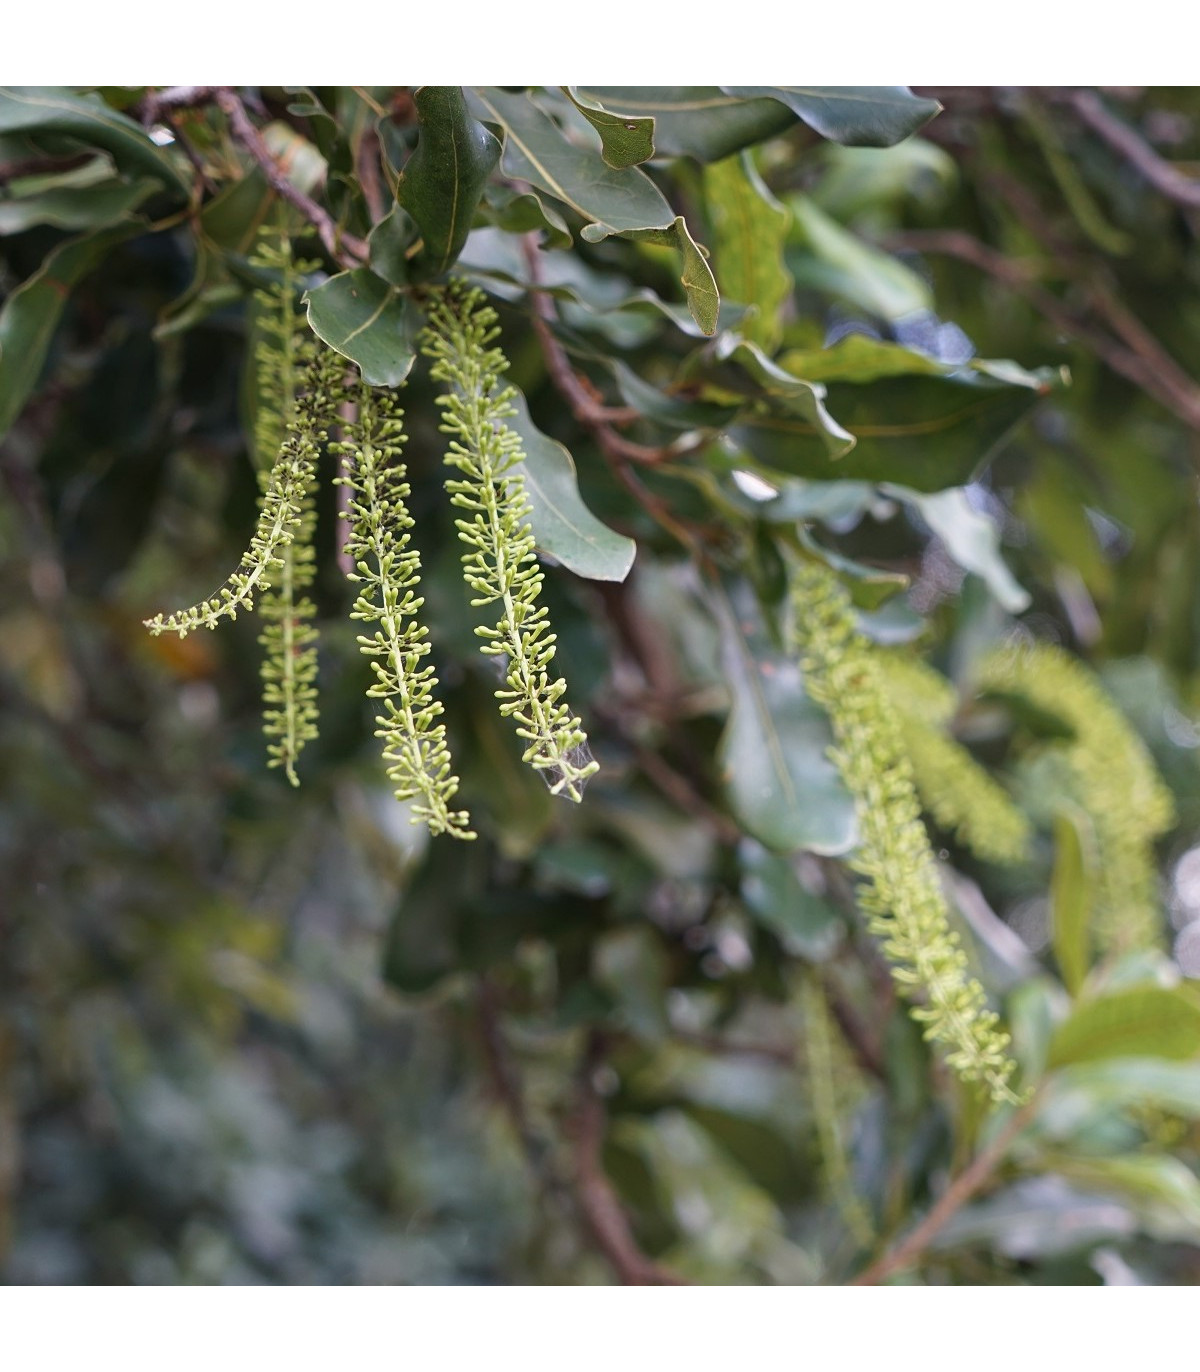 Makadámie - Macademia integrifolia - osivo makadámie - 2 ks